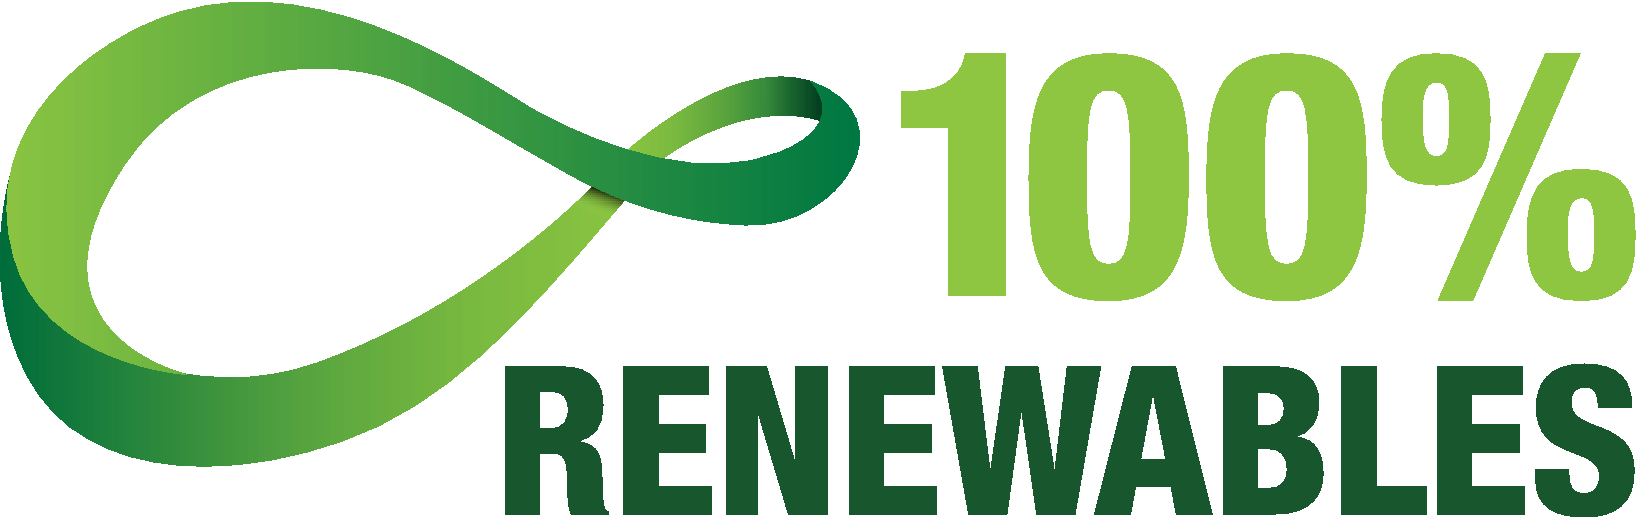 The Global 100% Renewable Energy Platform